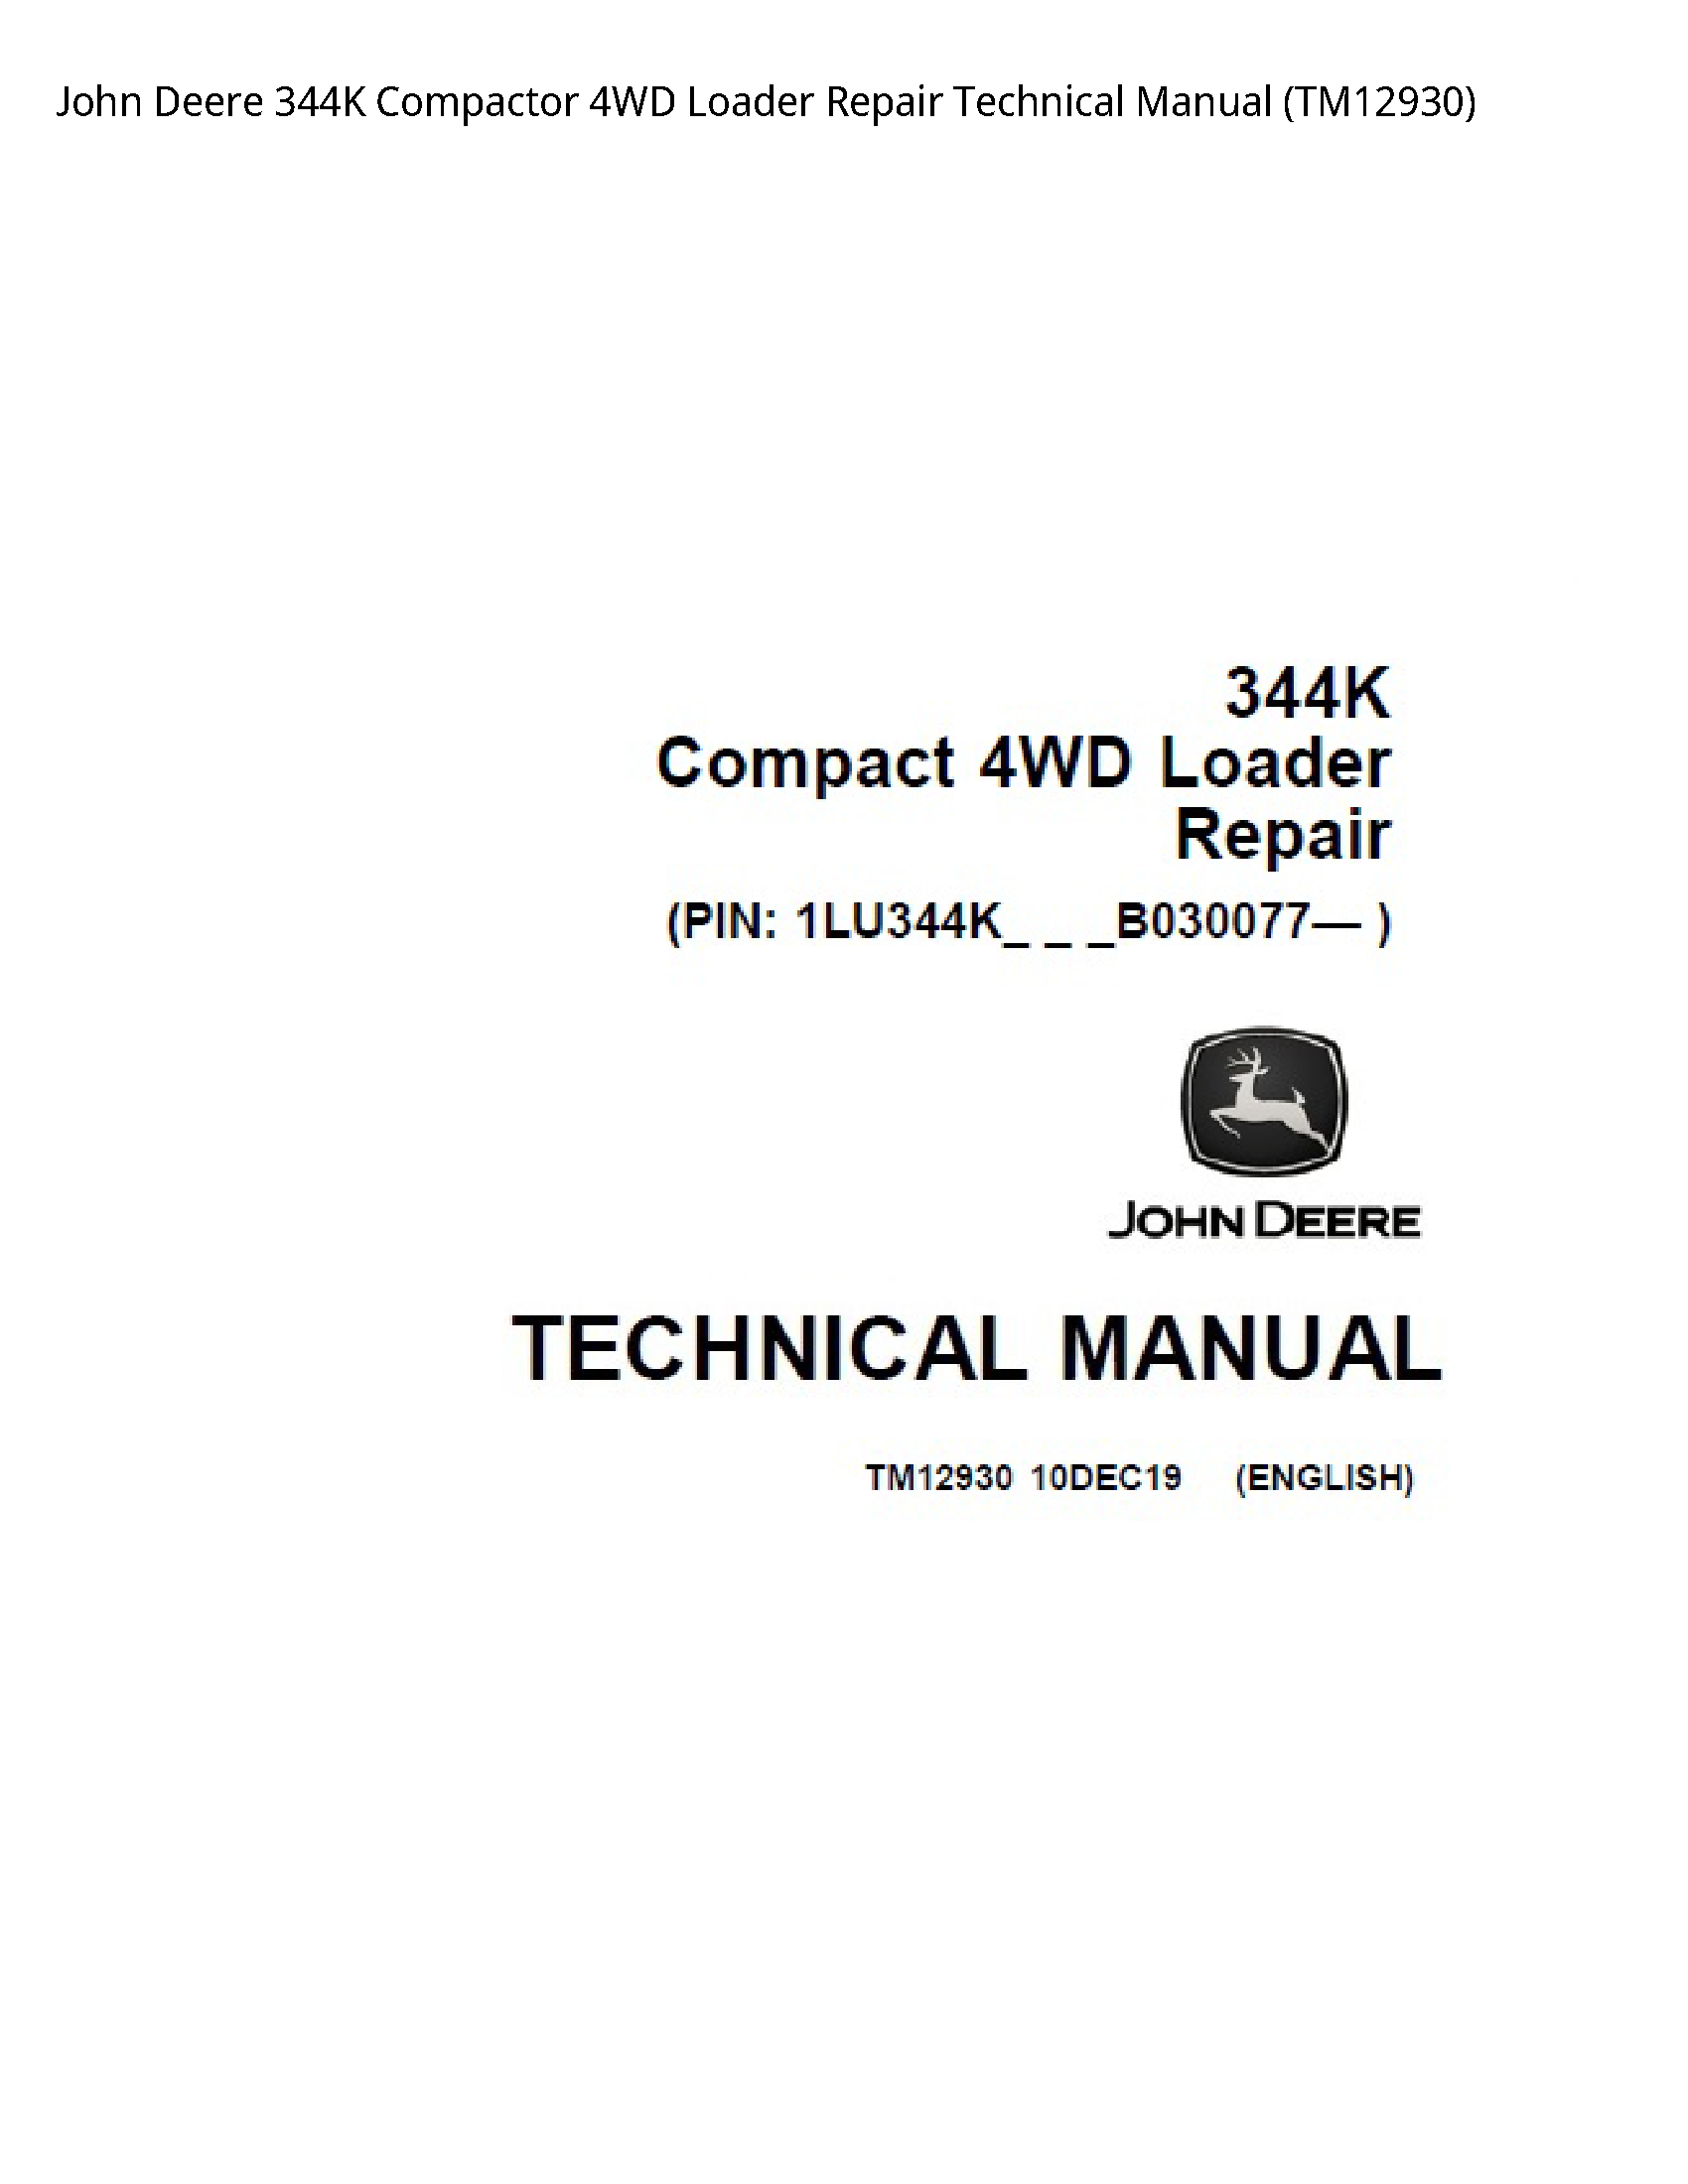 John Deere 344K Compactor Loader Repair Technical manual